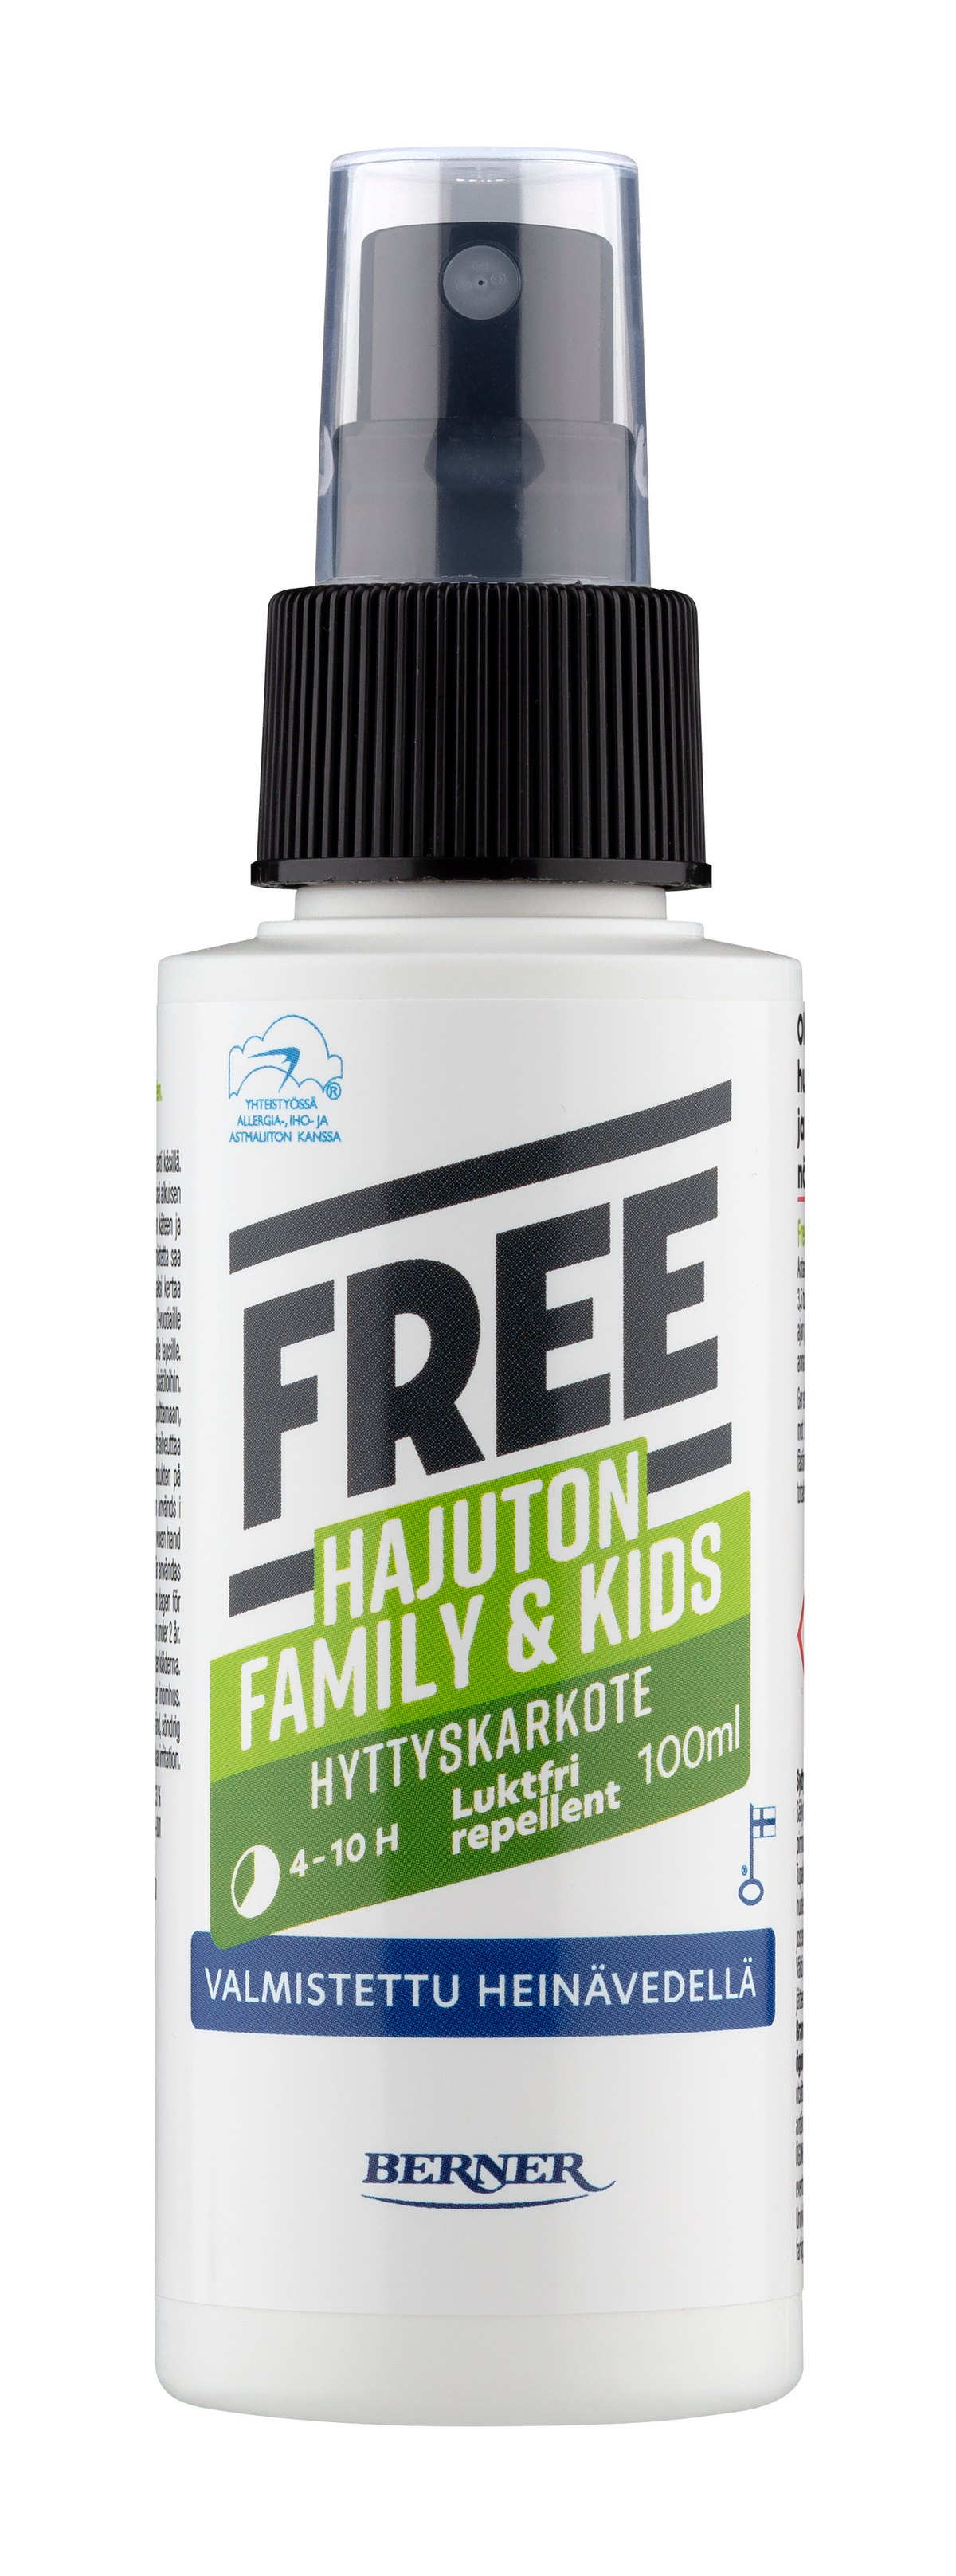 Free Hyttyskarkote Family & Kids 100 ml